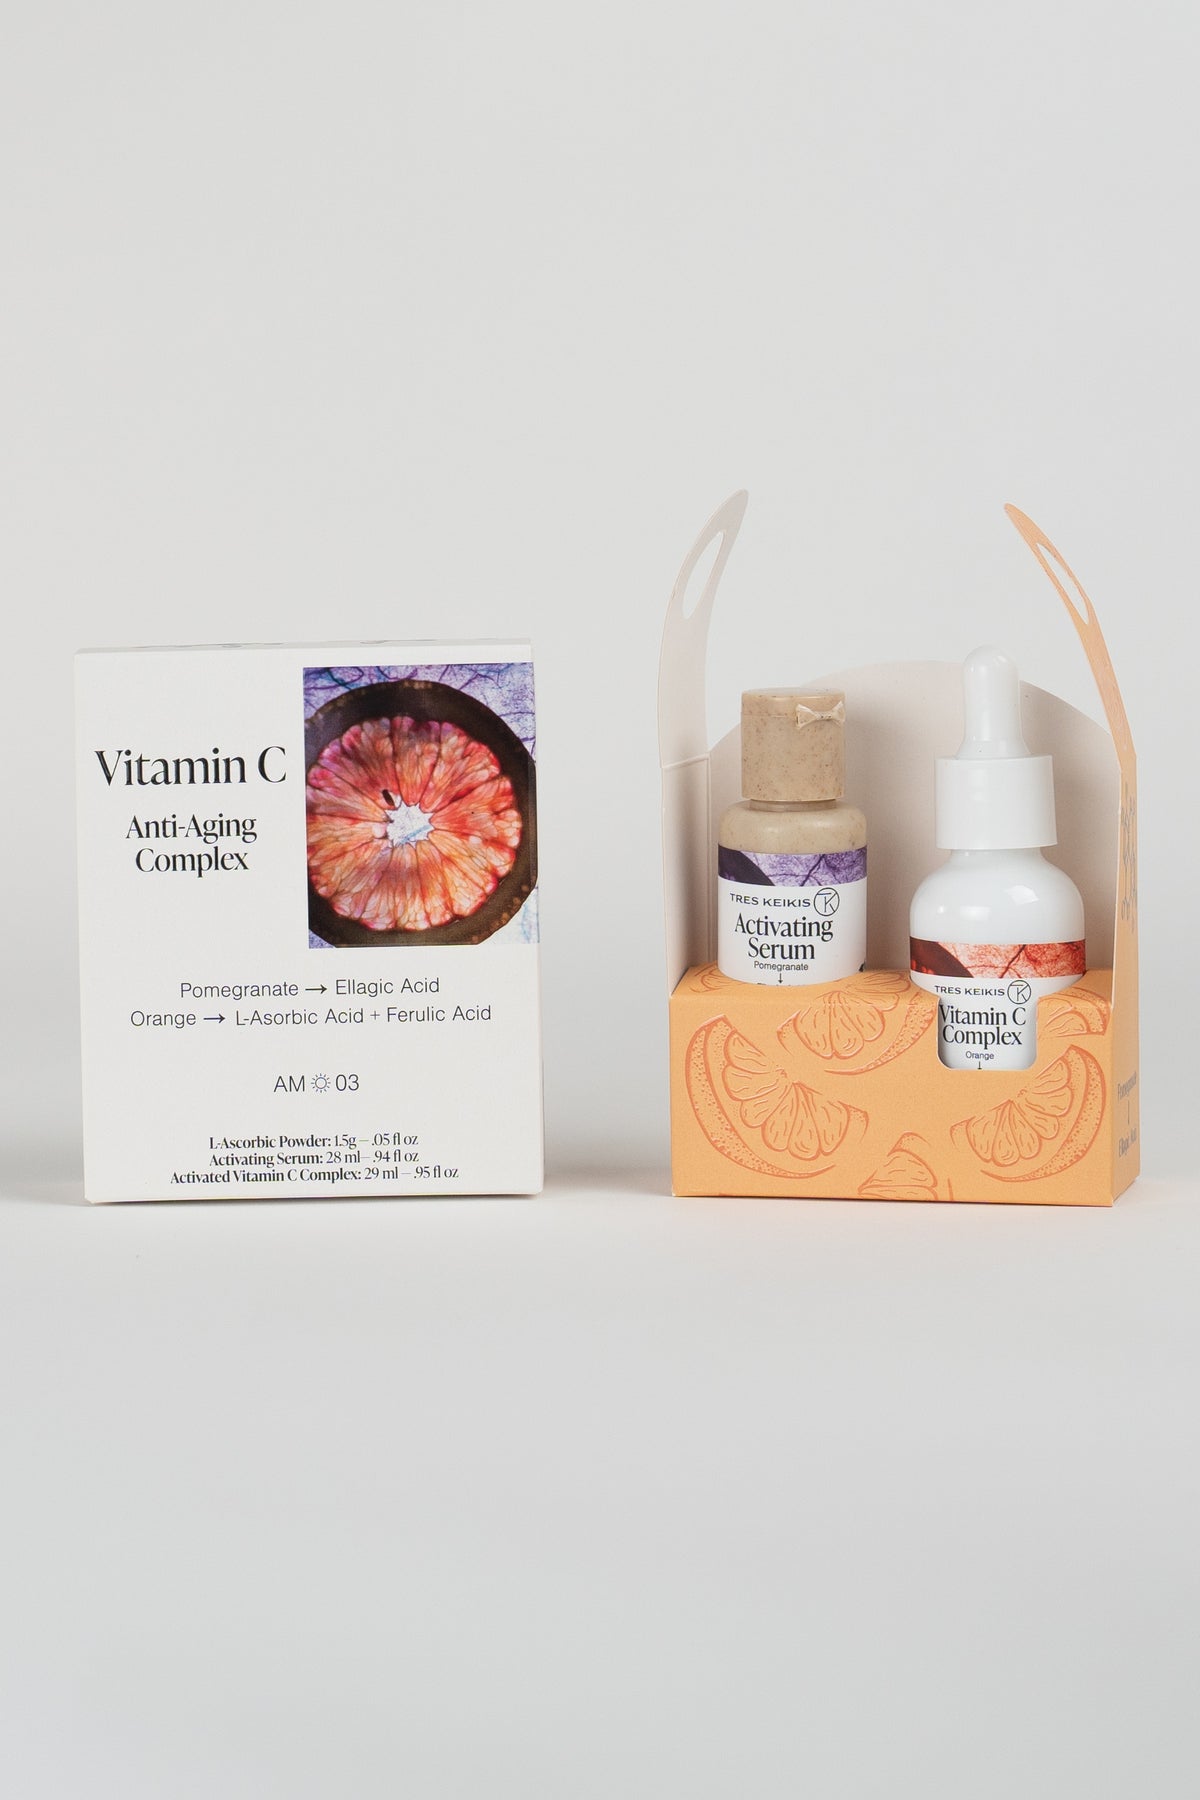 Vitamin C Anti-aging Complex